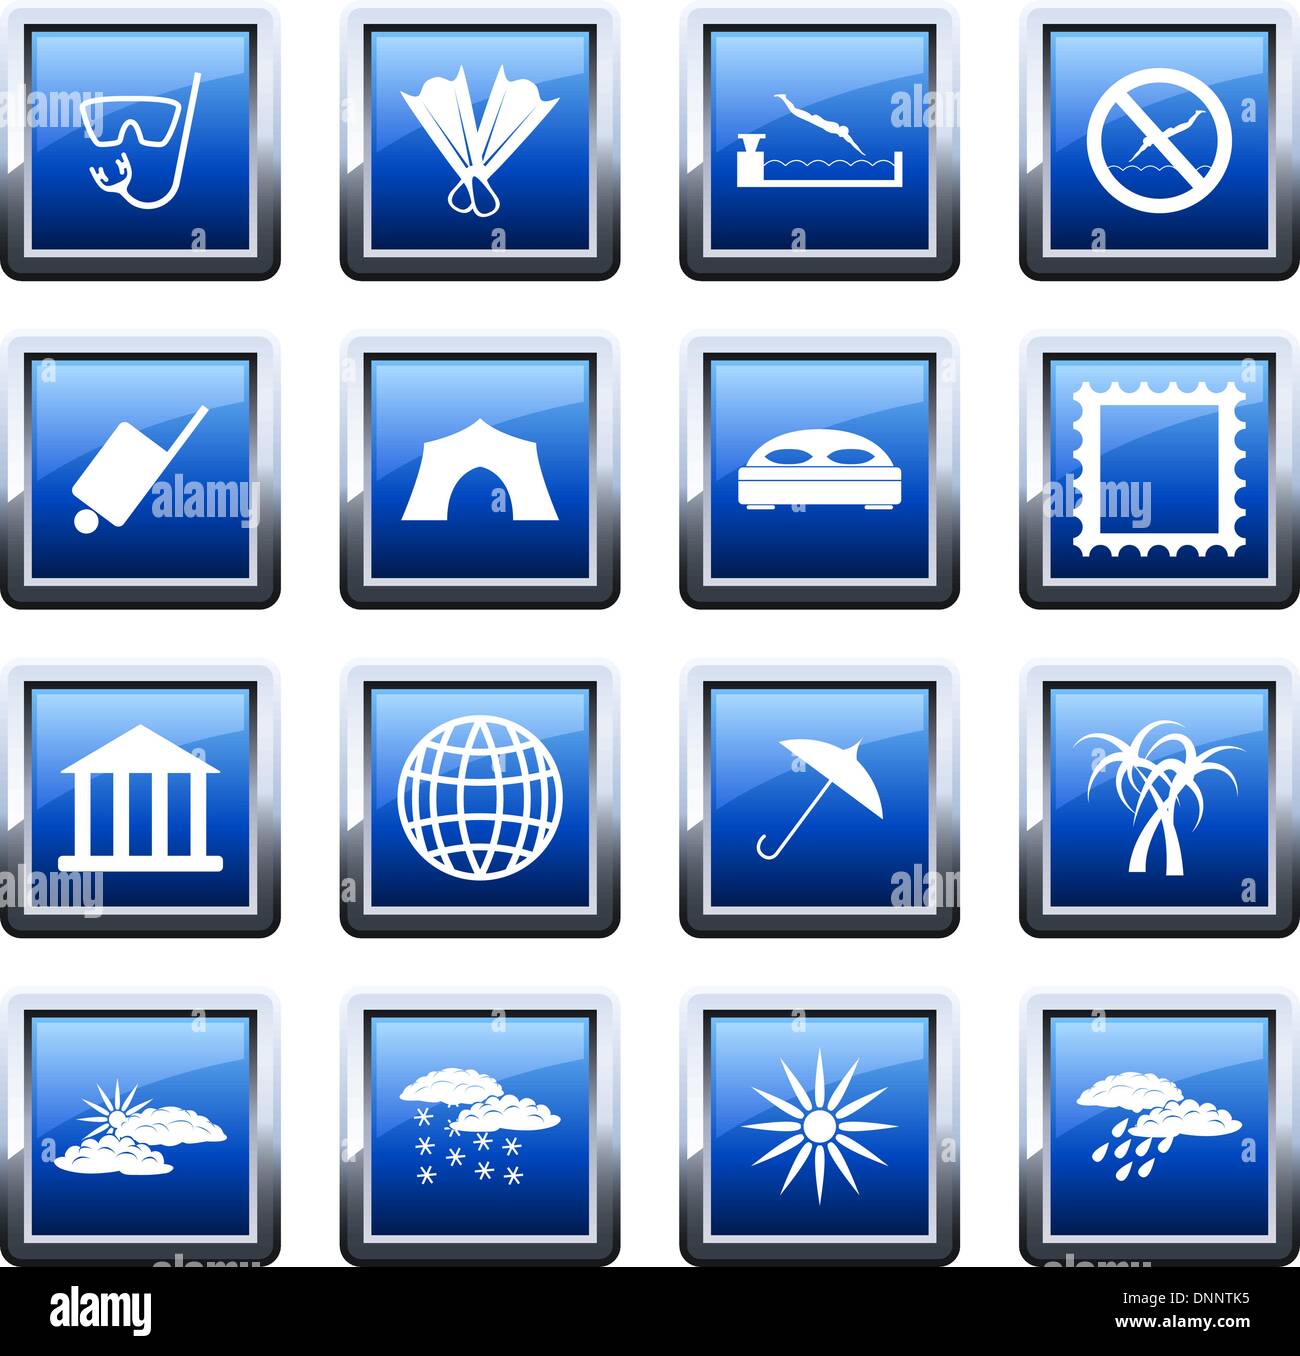 Reise-Set von verschiedenen Vektor-Web-icons Stock Vektor